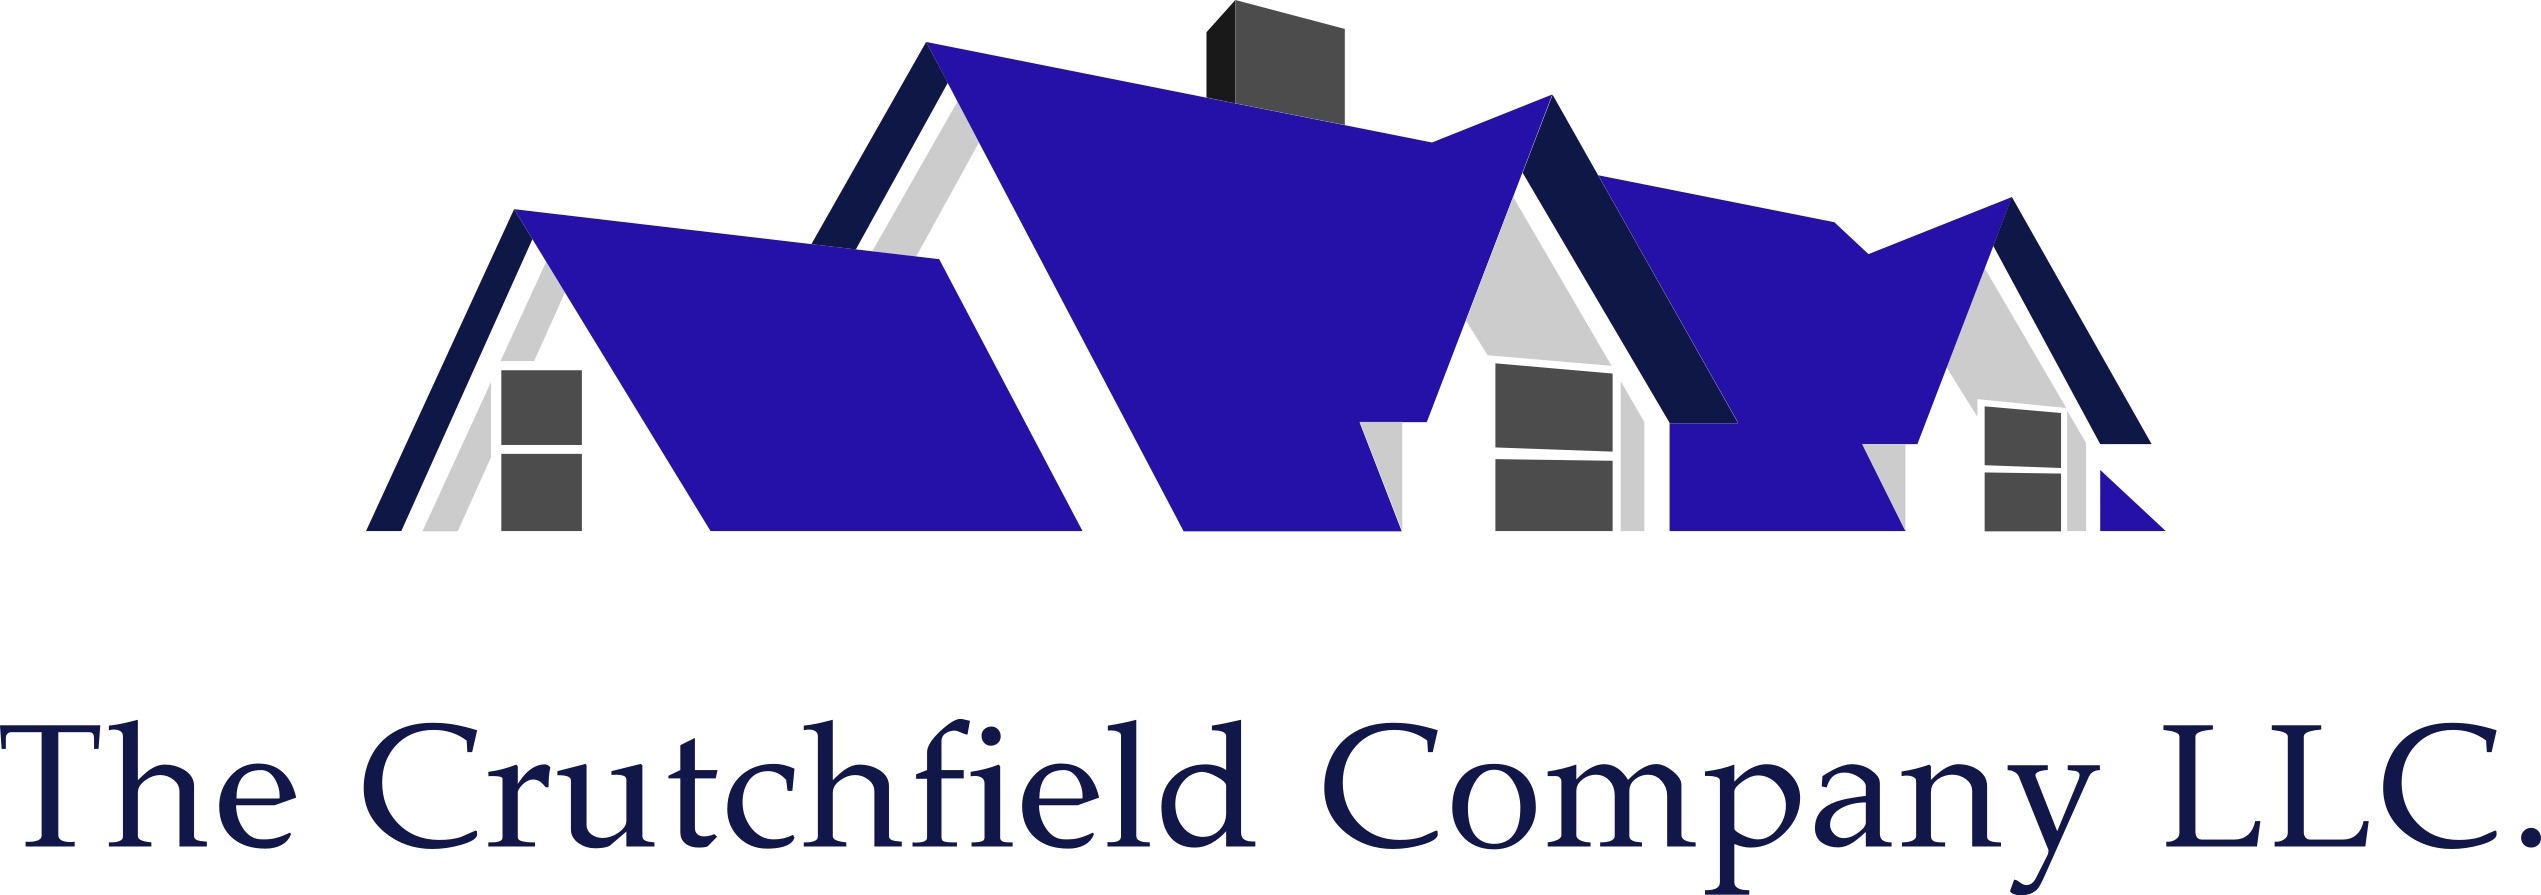 The Crutchfield Company